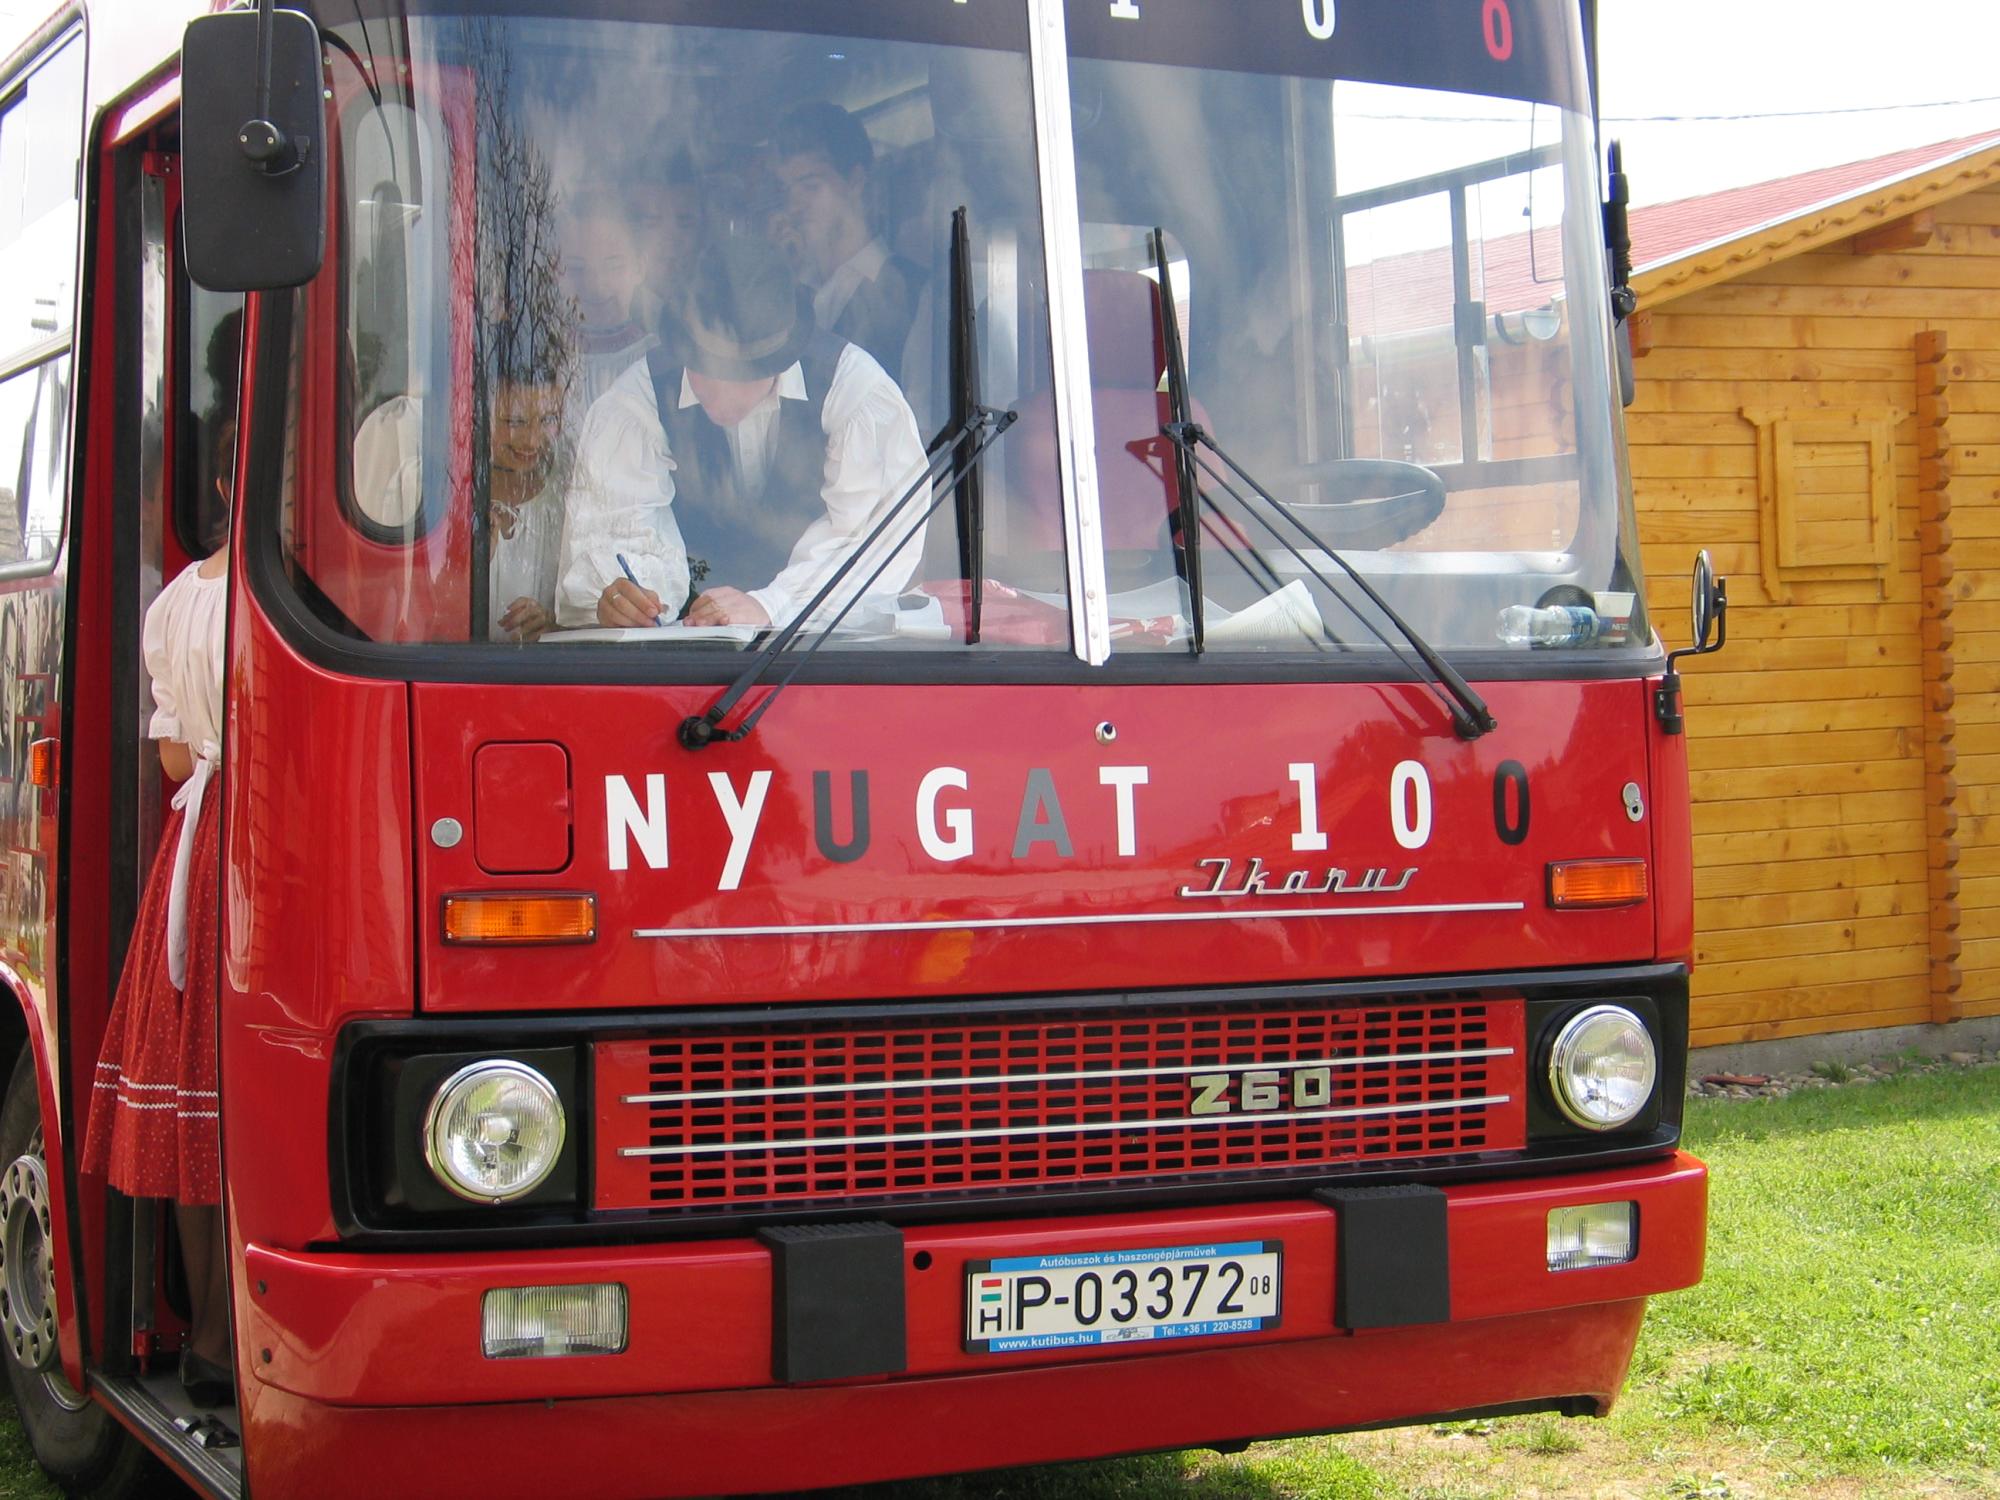 Nyugat busz, 2008